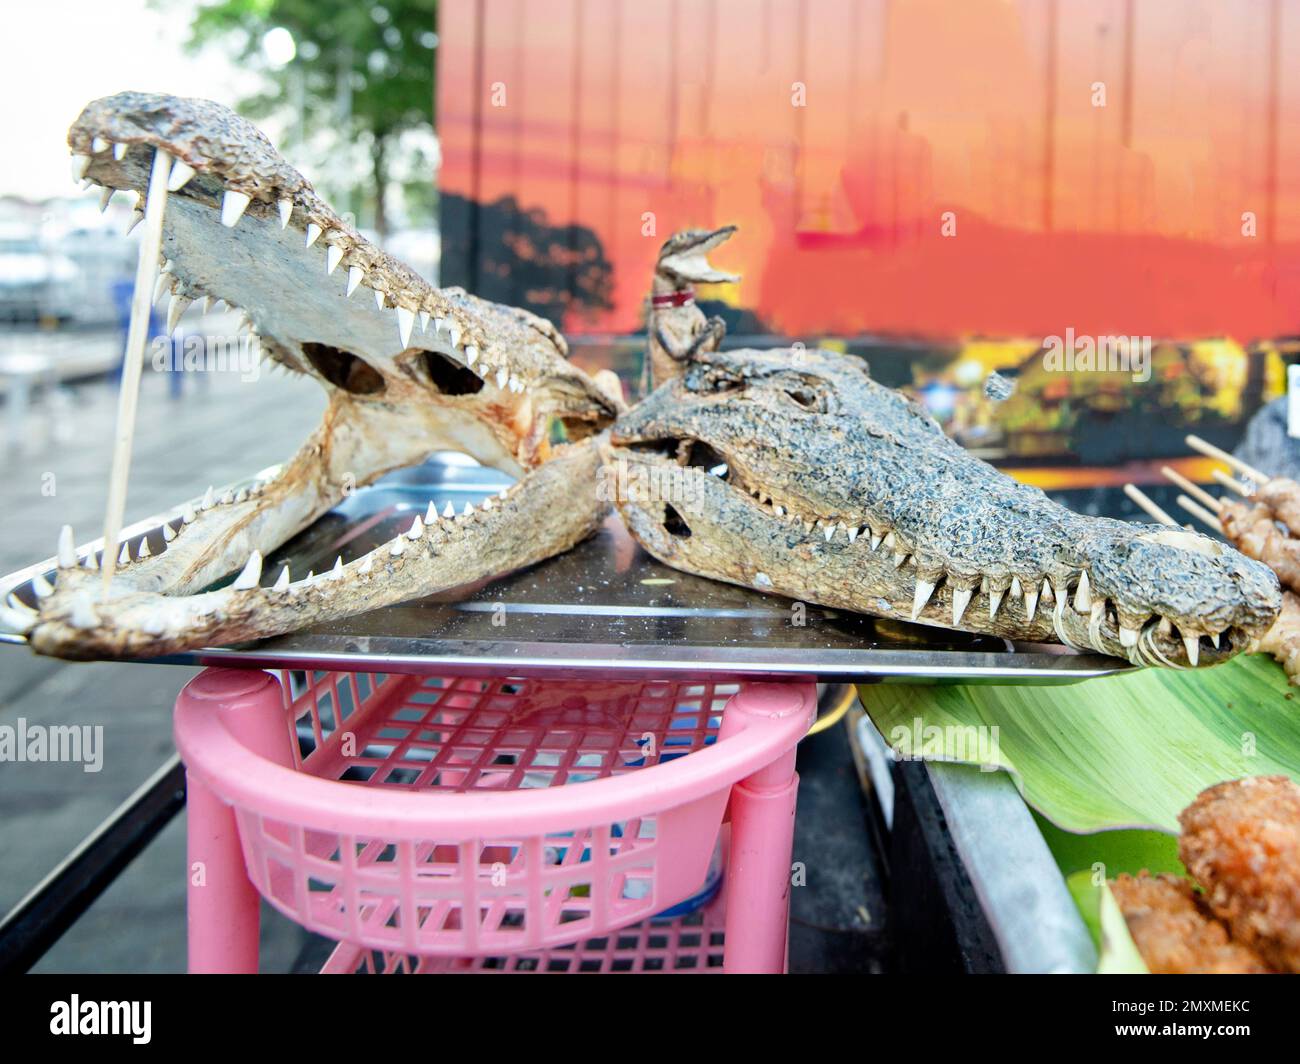 Una carne di coccodrillo, venditore di strada mostra due teste di coccodrillo essiccate, bocca agape, con denti affilati, accanto a vari kebab e altre preparazioni della carne, Foto Stock